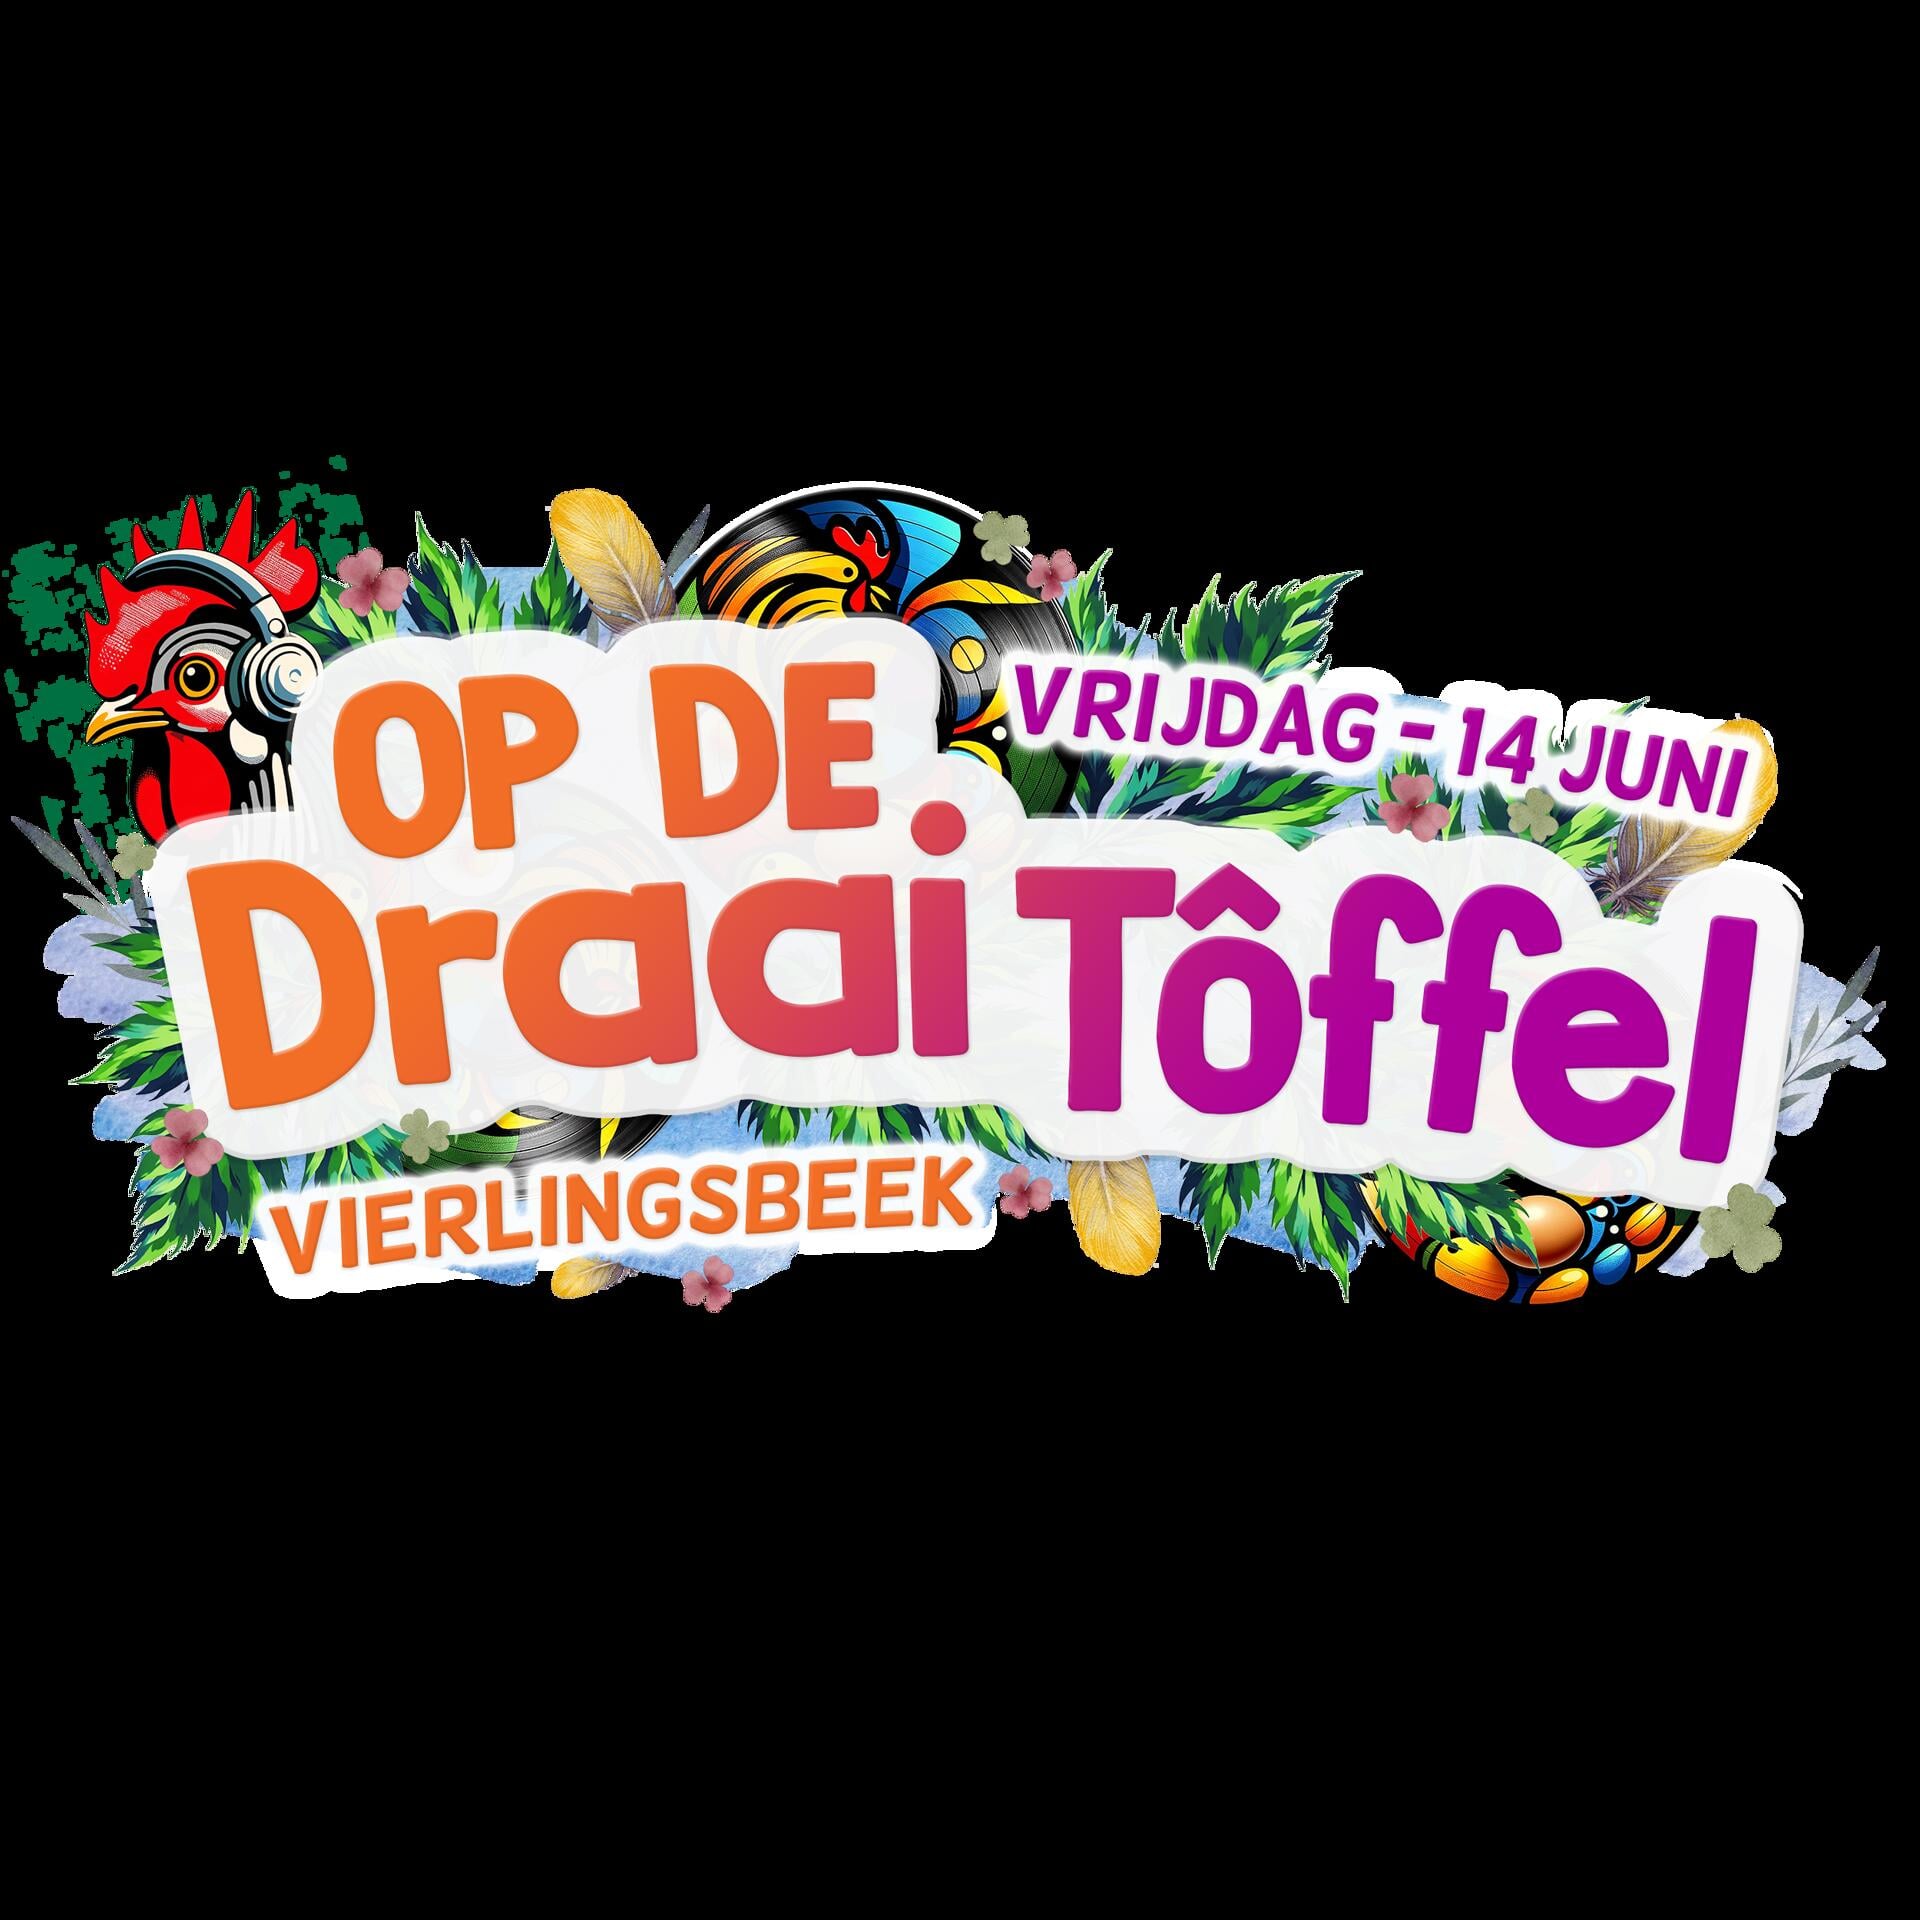 Op De Draaitoffel op vrijdag 14 juni is de muzikale opwarmer voor Op De Tôffel.